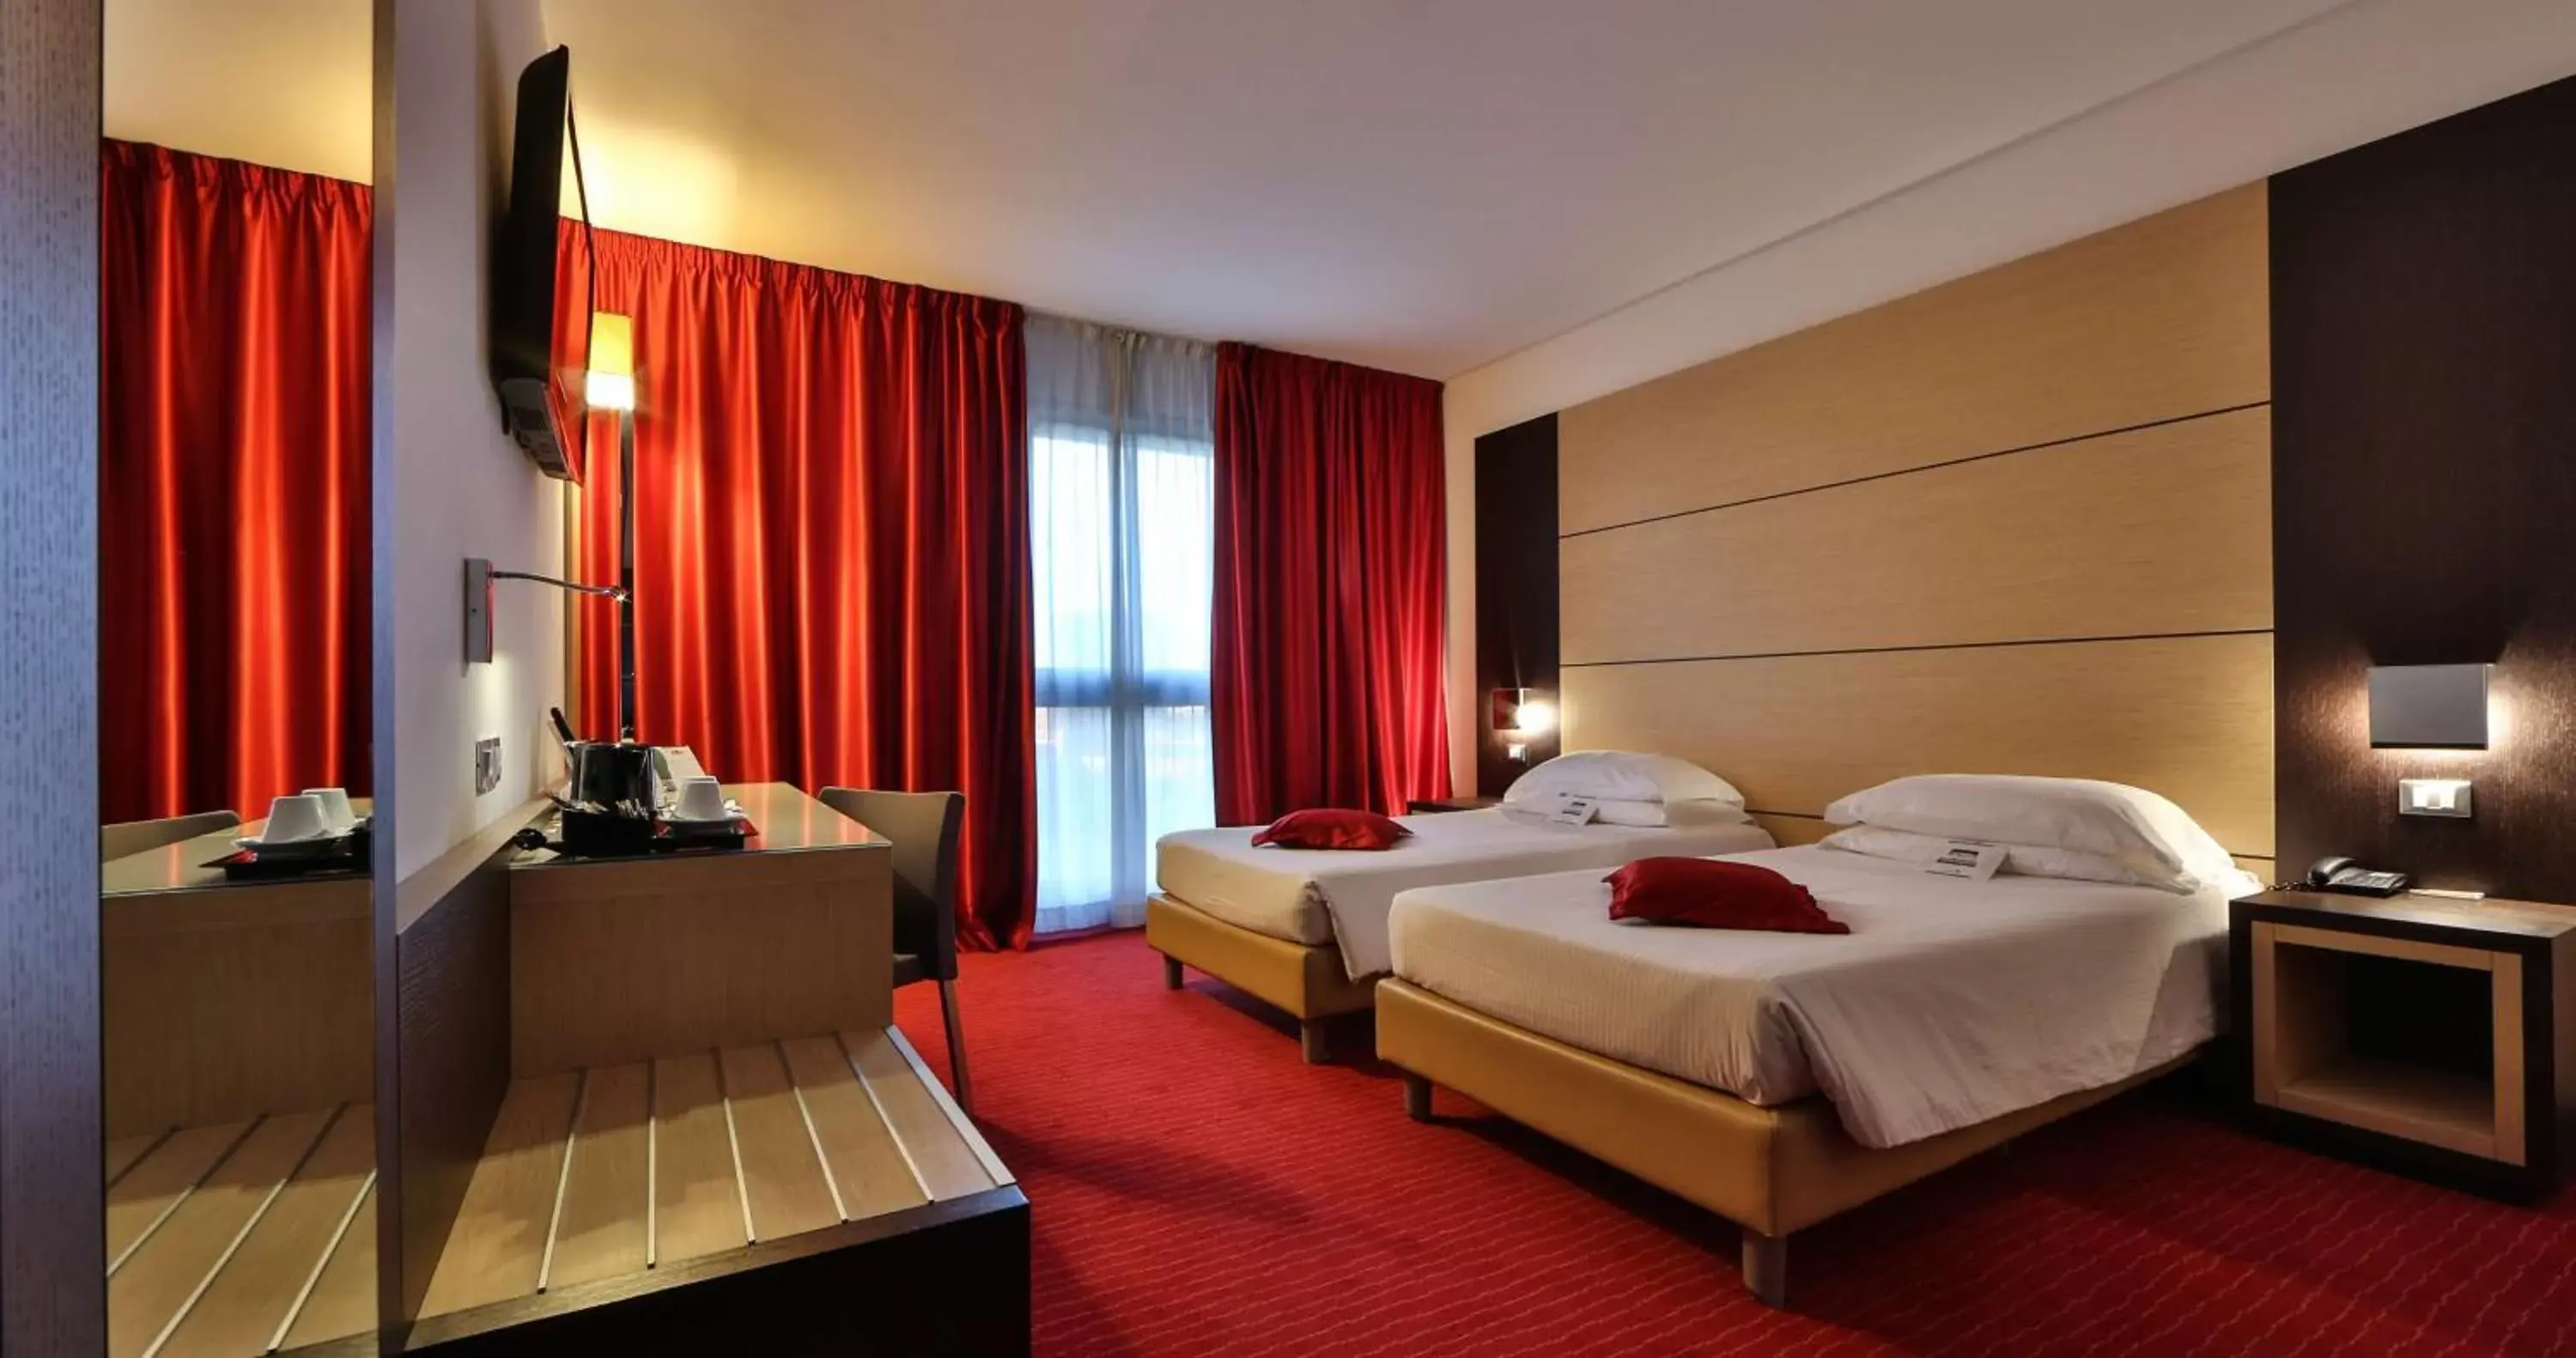 Bedroom, Bed in Best Western Plus Hotel Galileo Padova